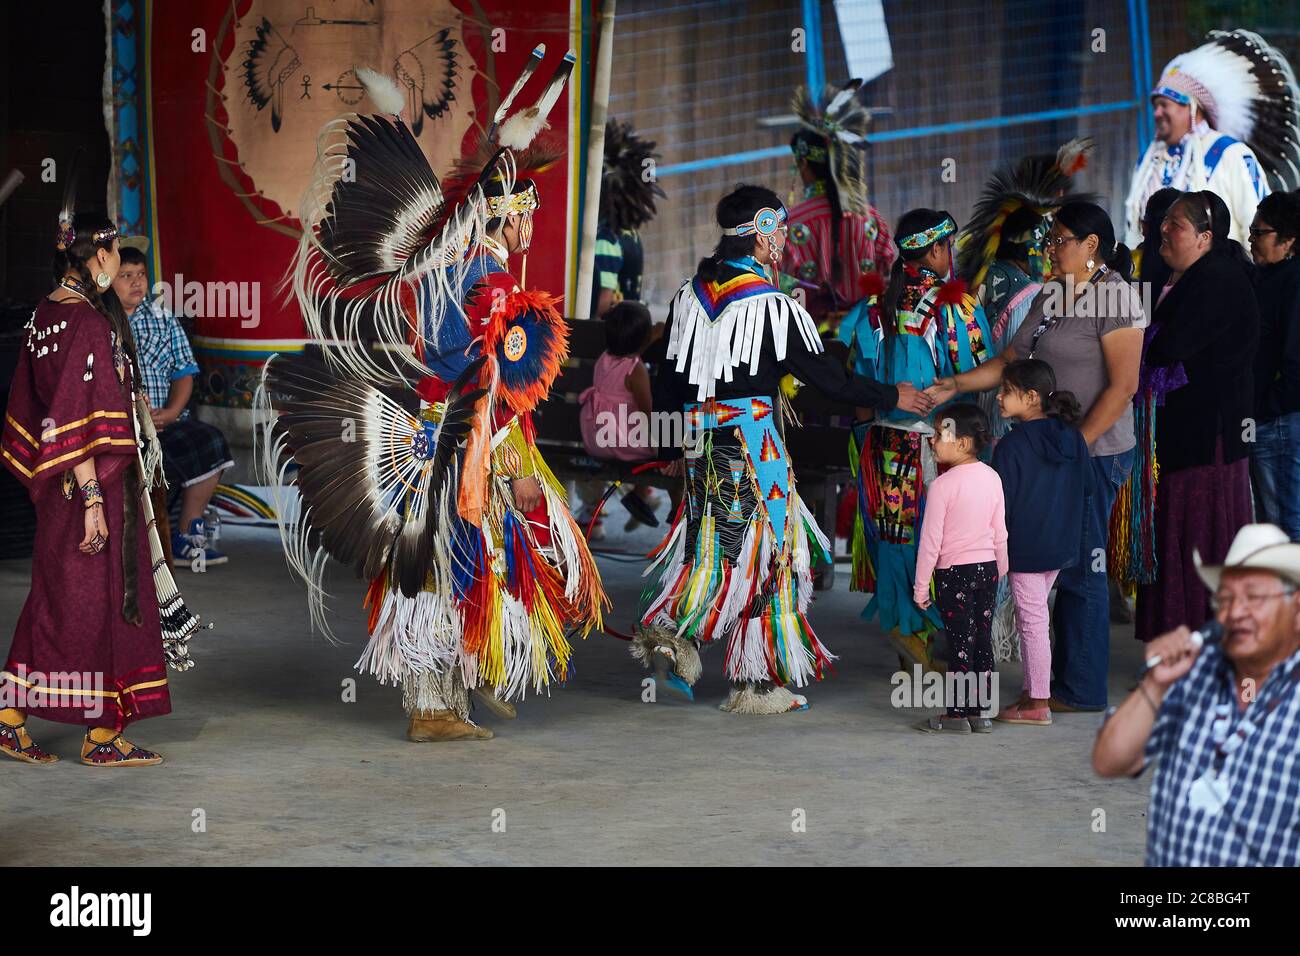 Eine inspirierende Darstellung des Erbes der Aborigines in Nordamerika, die in einem traditionellen Tanz festgehalten wird. Stockfoto